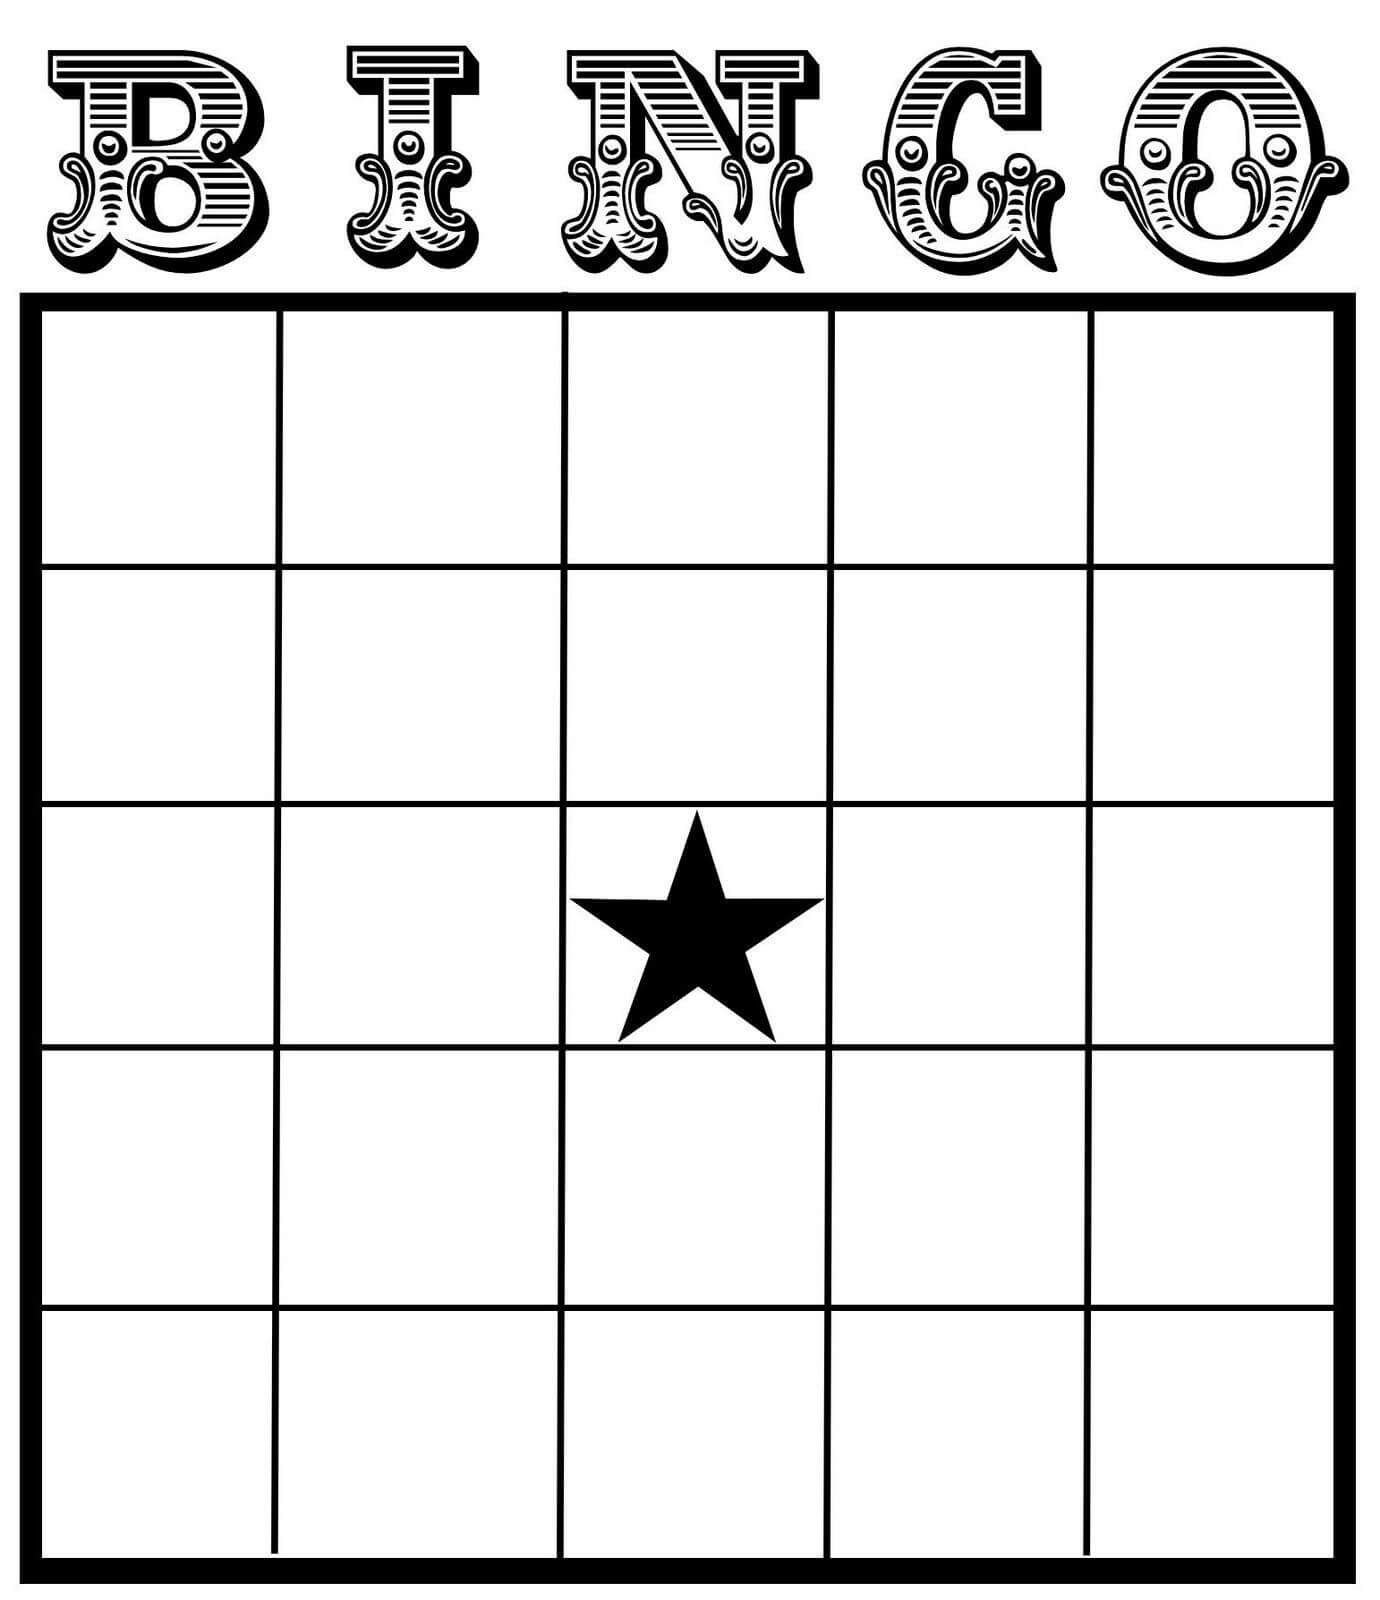 002 Blank Bingo Card Template Ideas Stirring Excel 5X5 For Blank Bingo Card Template Microsoft Word